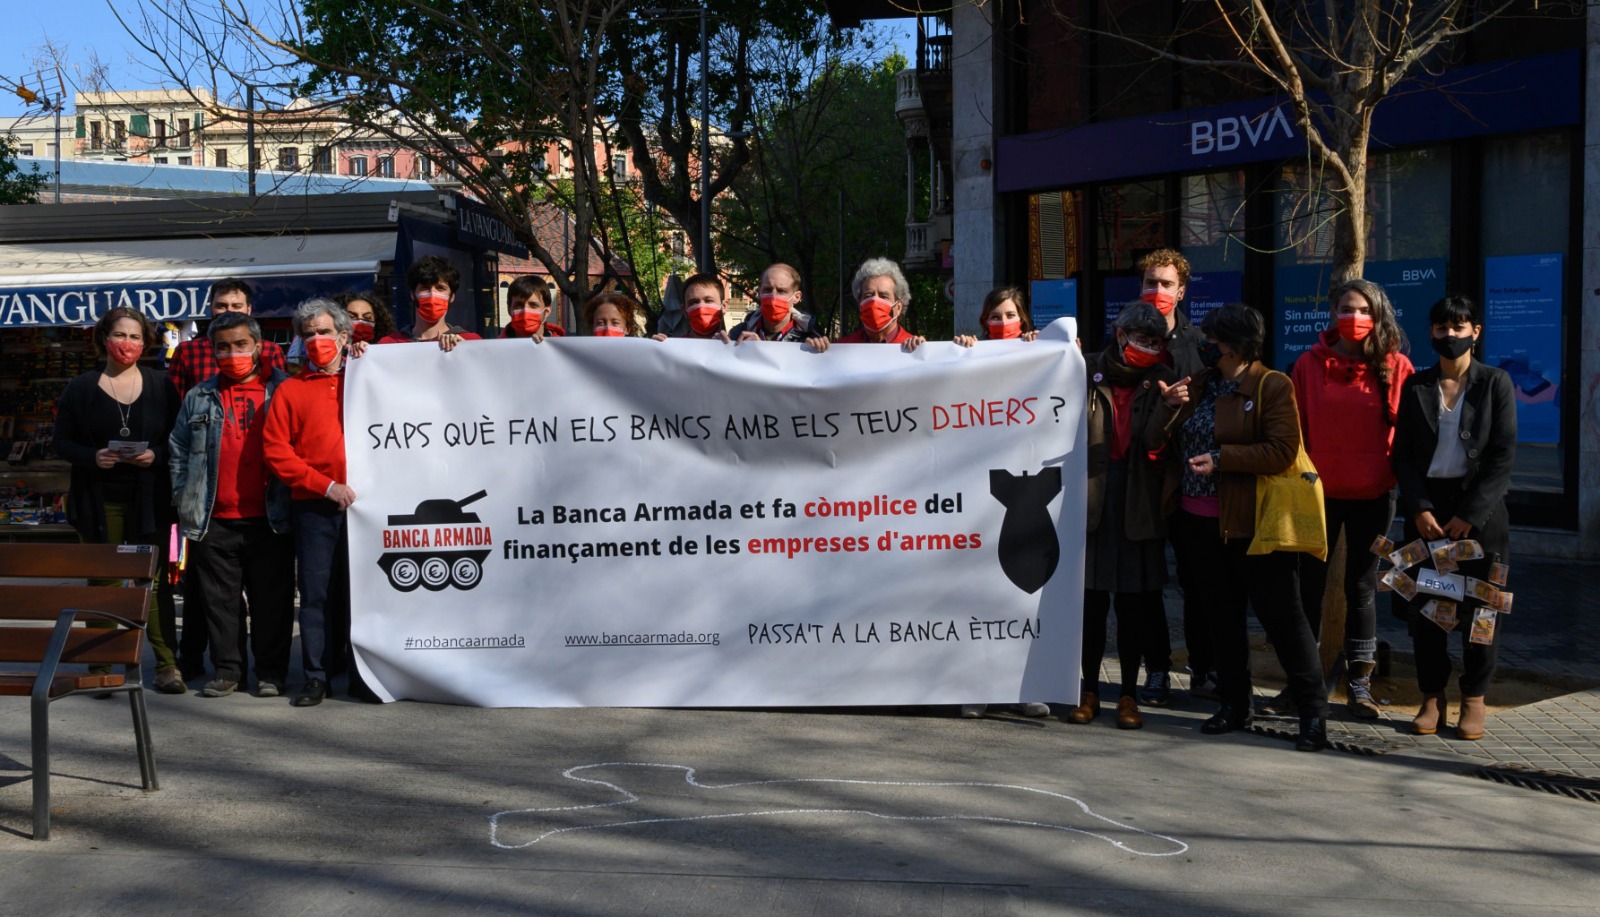 La Campanya Banca Armada denuncia les inversions en armes del BBVA en una acció a Barcelona i a la seva Junta d’Accionistes